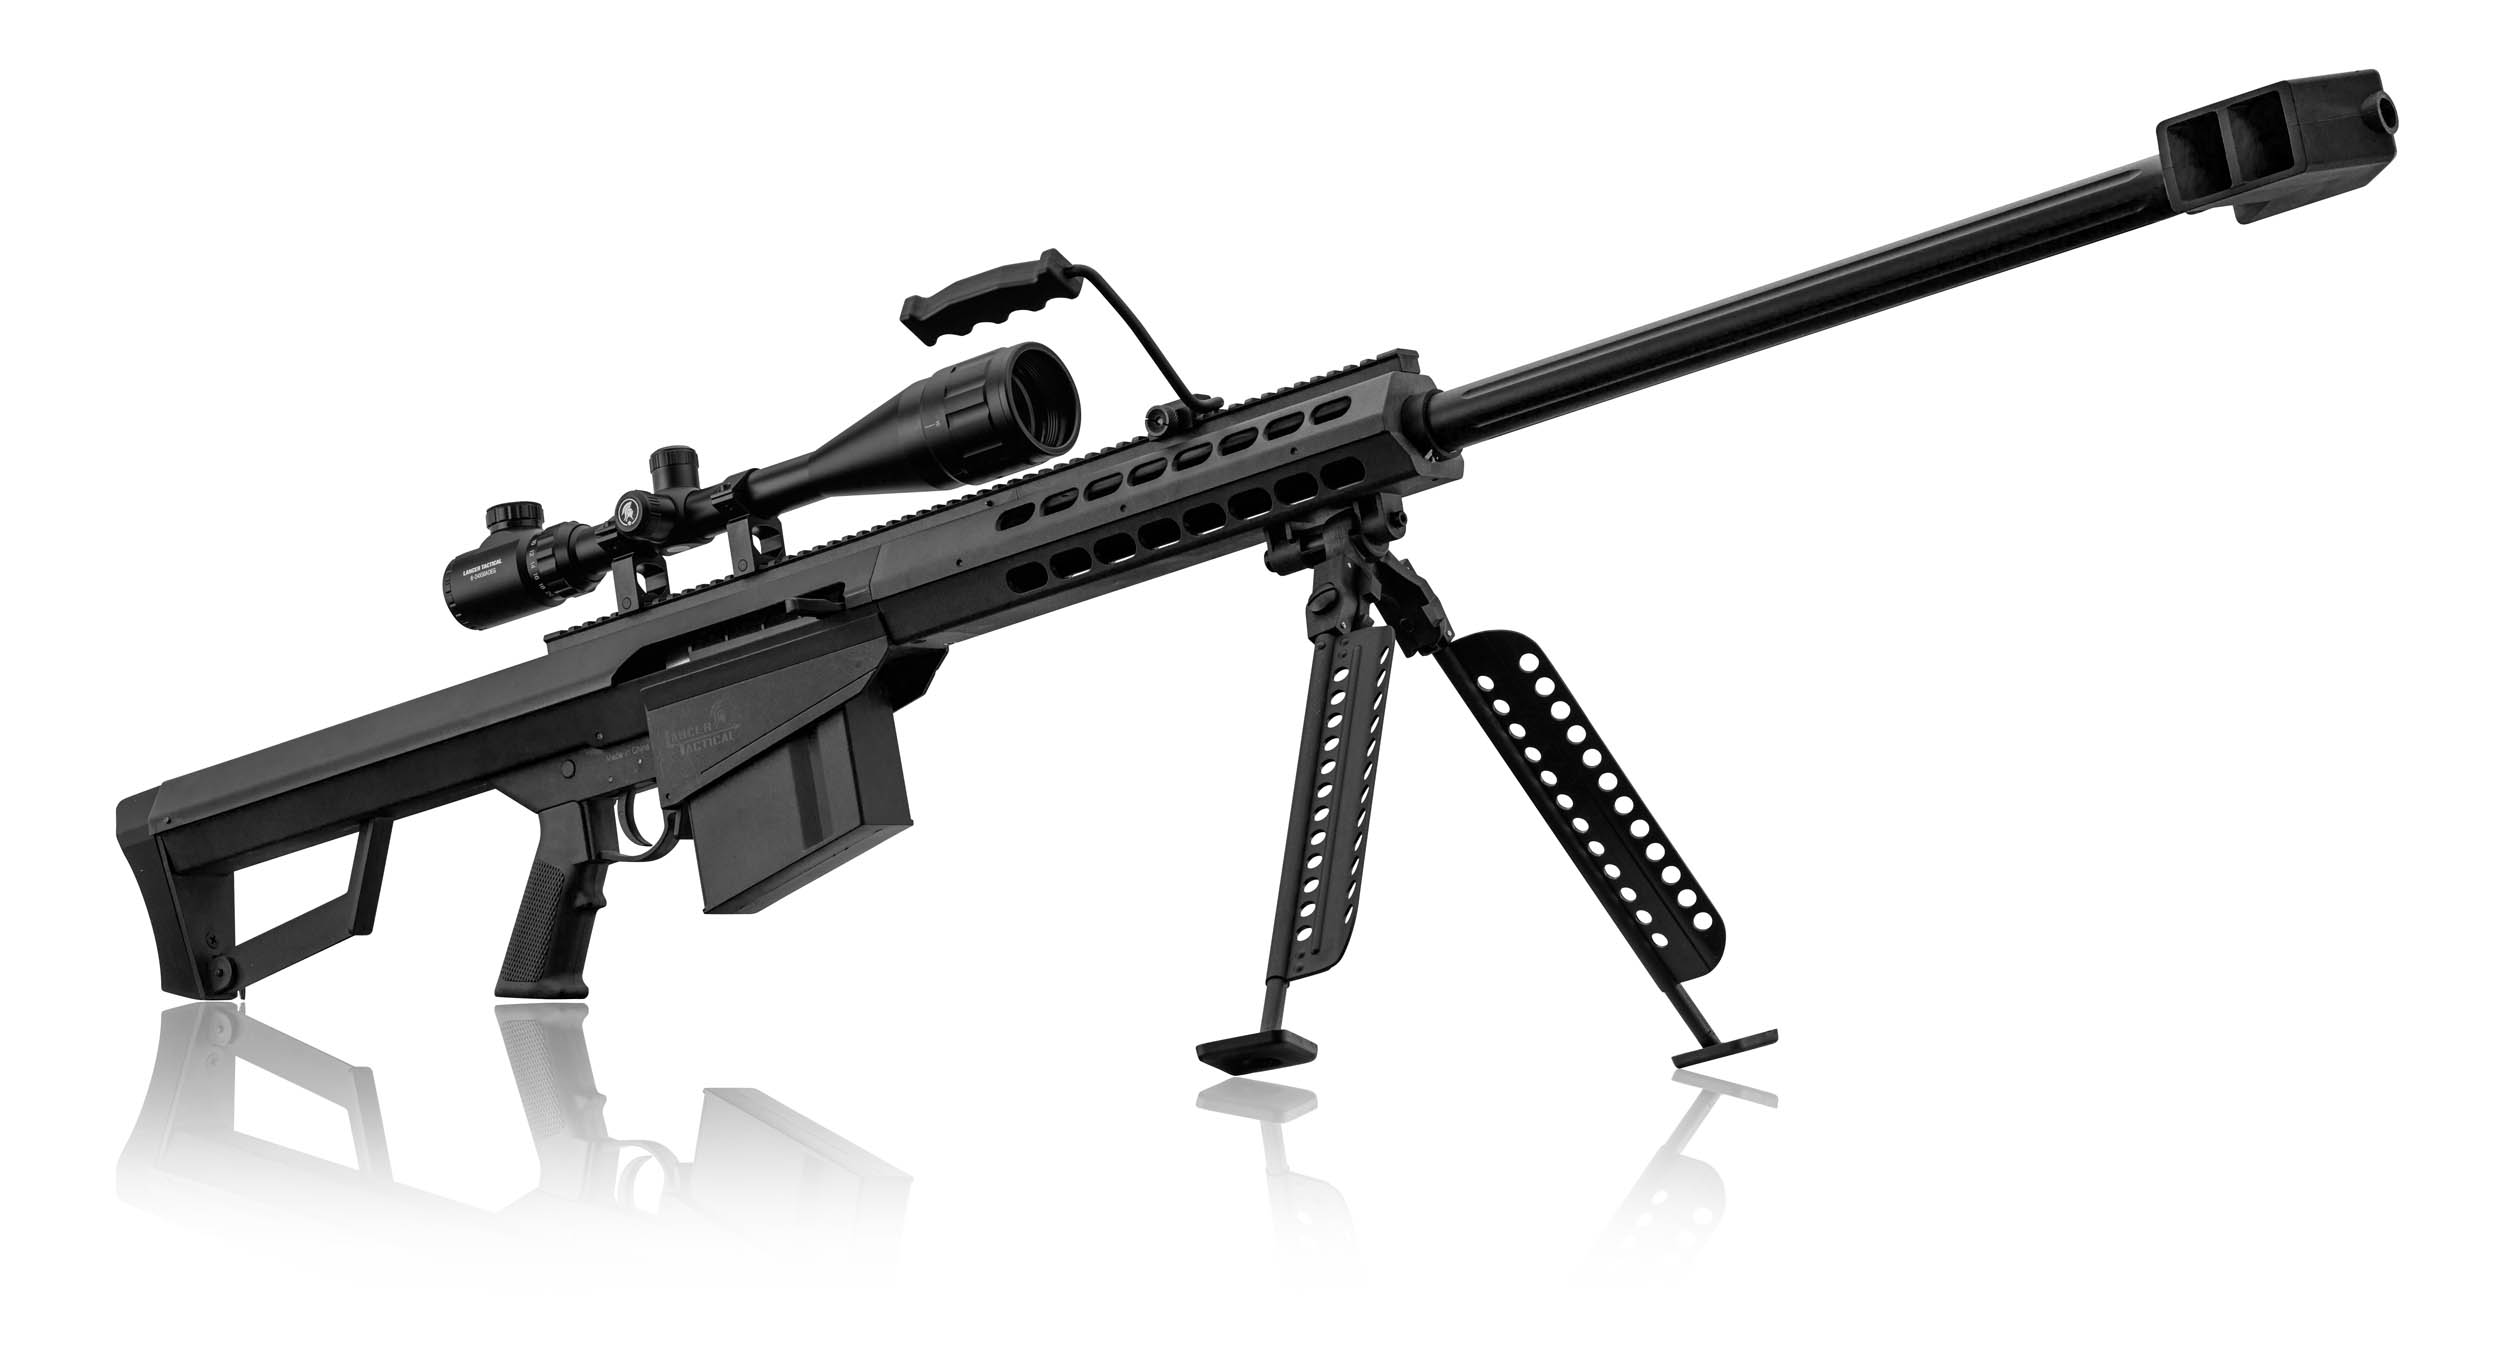 PCKLR3050-02 Pack Sniper LT-20 noir M82 1,5J + lunette + bi-pied + poignée - PCKLR3050